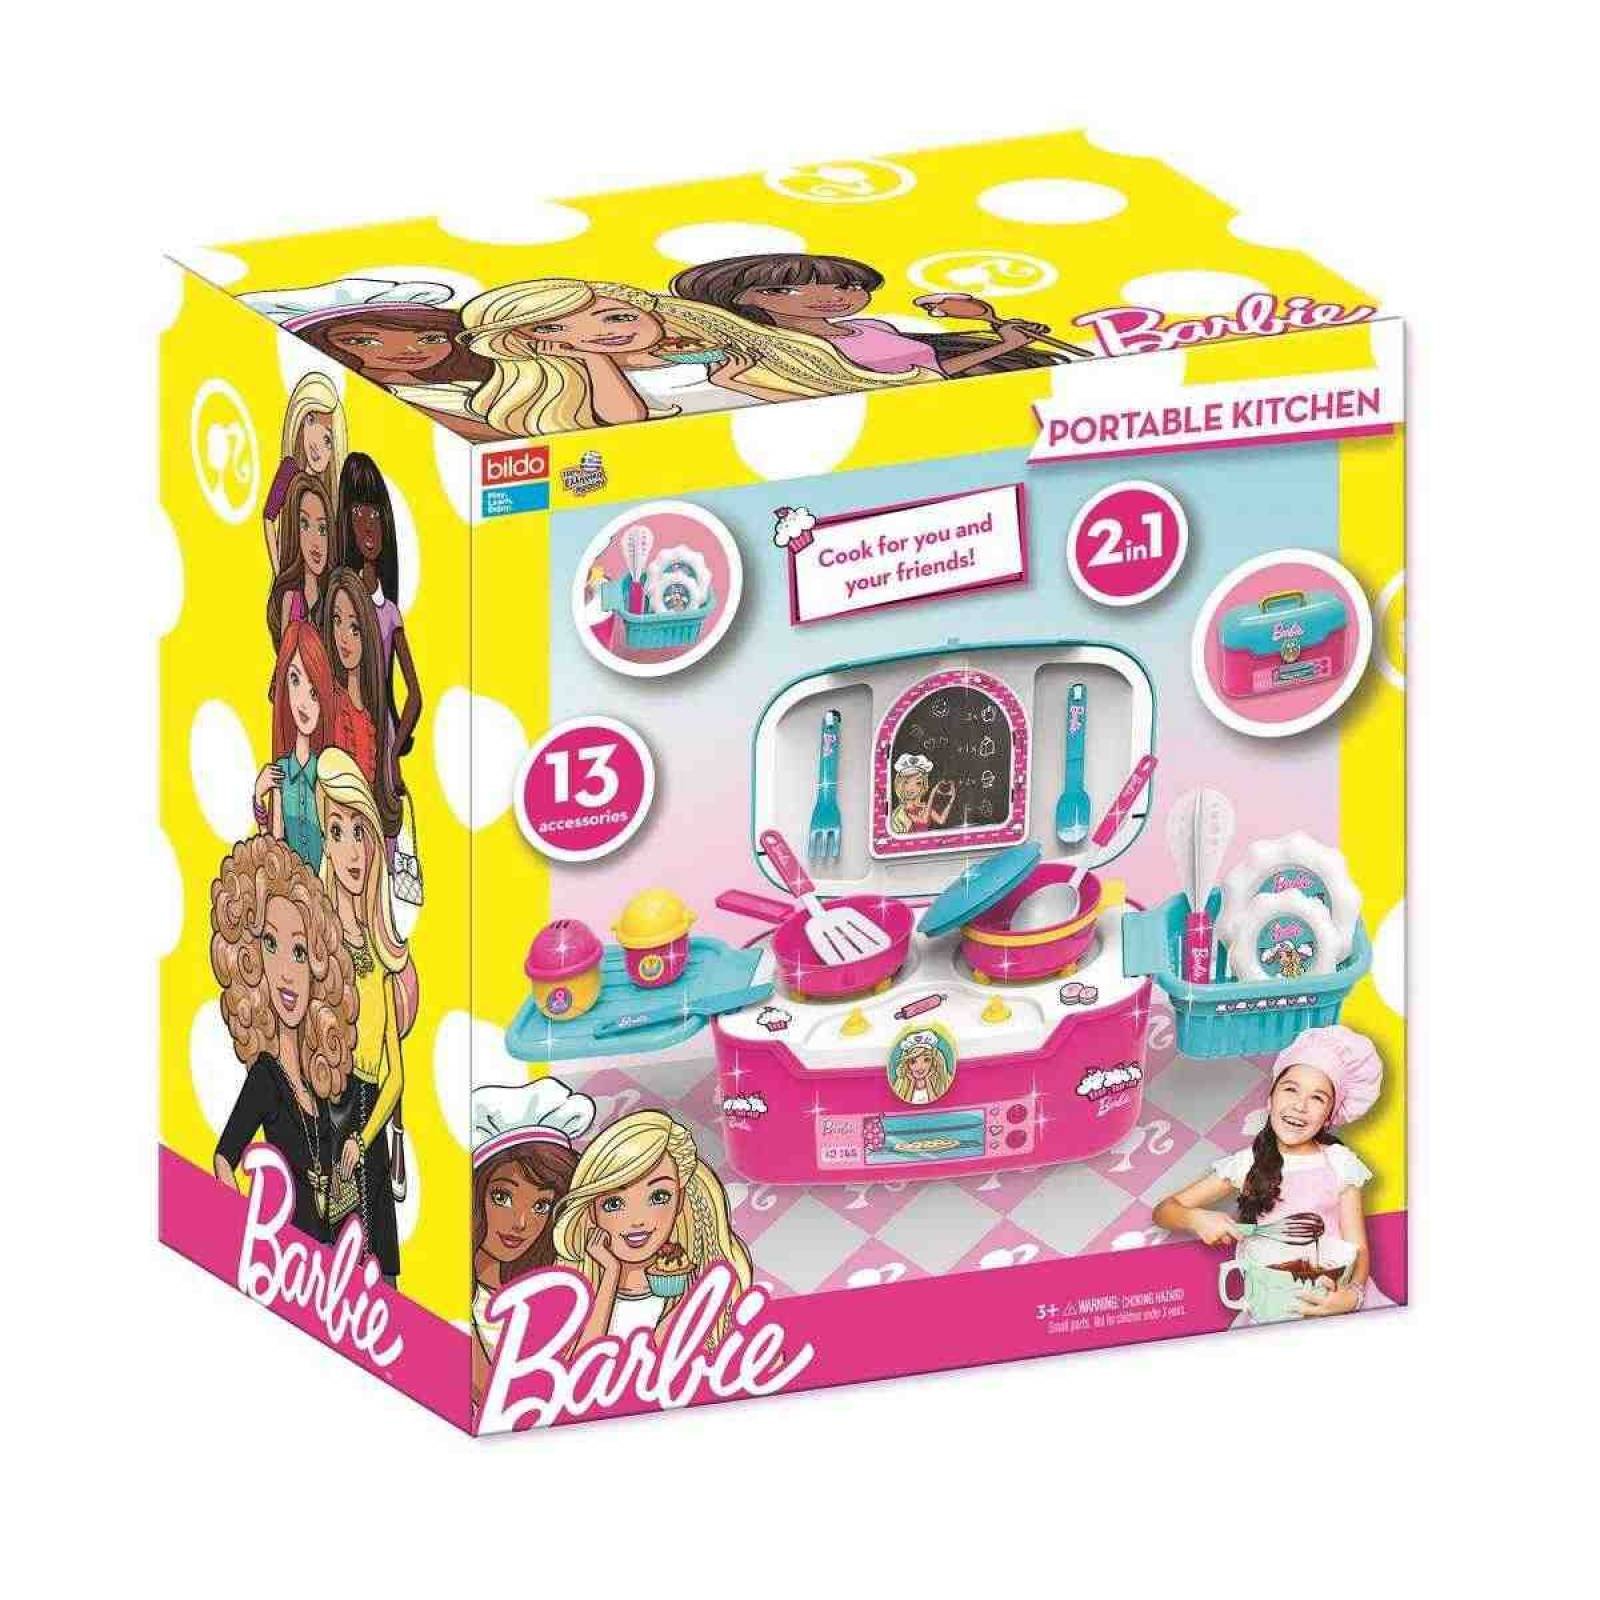 Cocina Portable Barbie 2 en 1 Color Multicolor